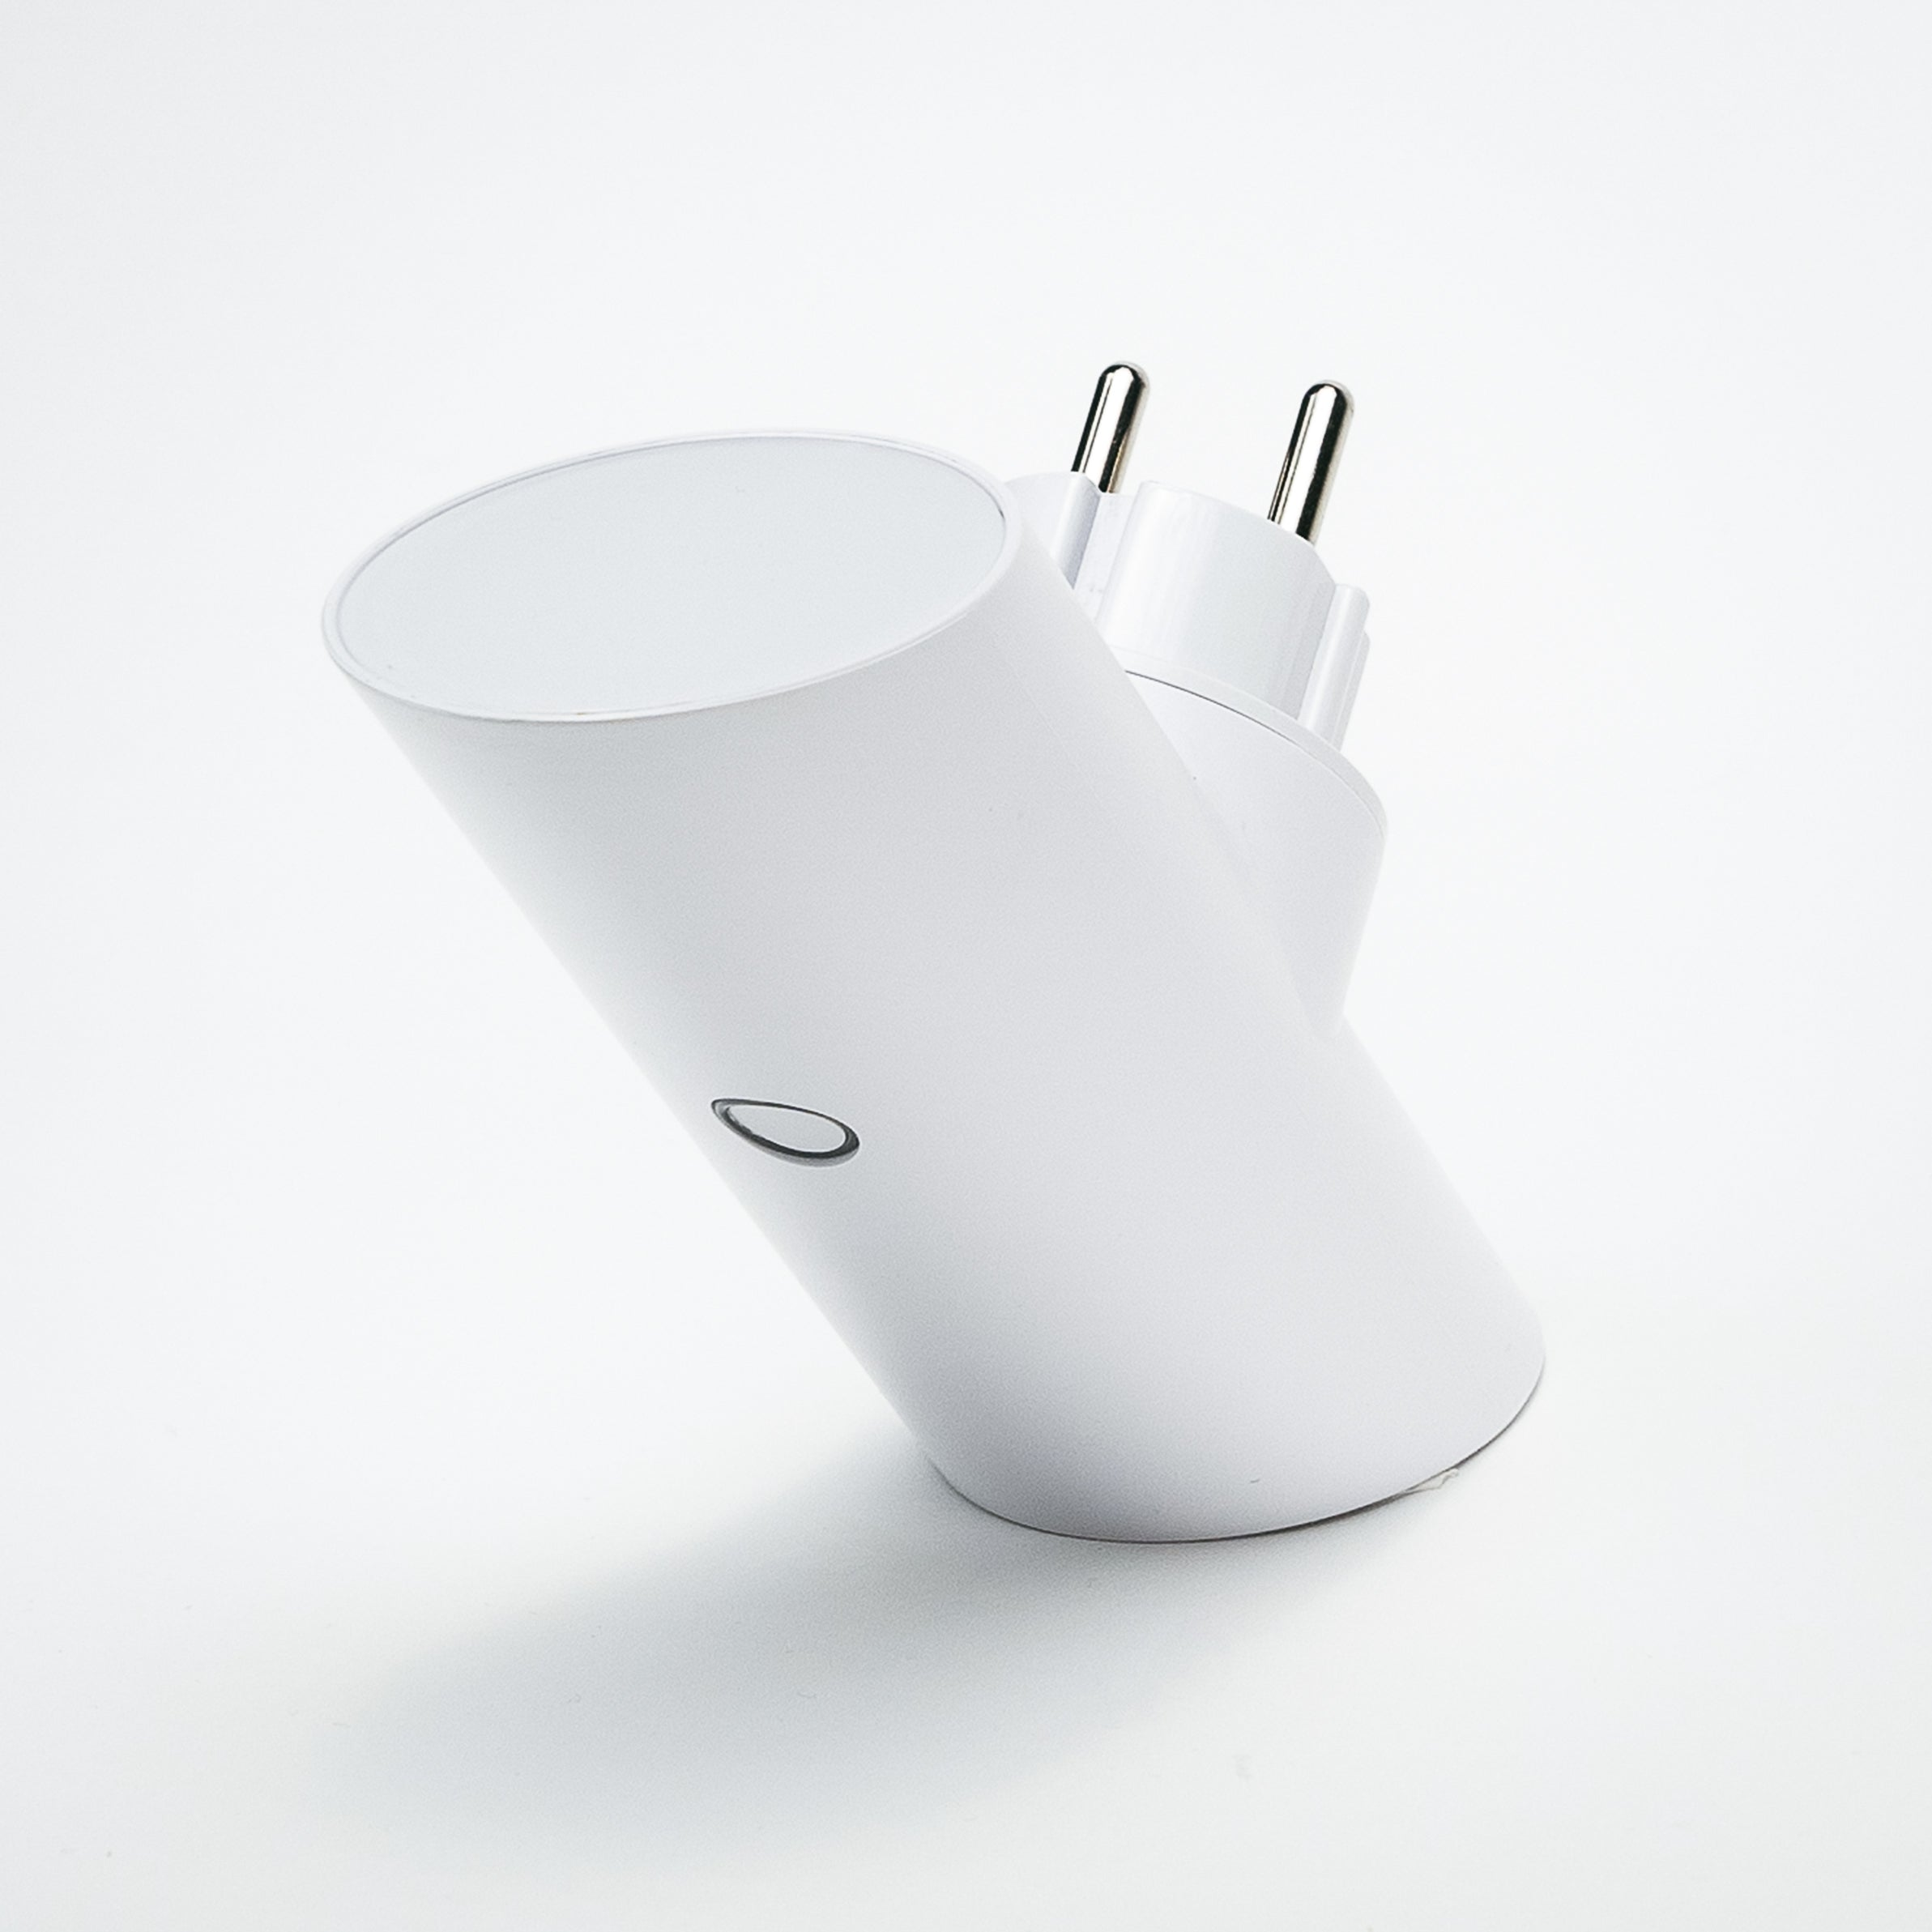 Wallcharger 4 Adapter Spotlight TECH Apple, mit Sony Weiß etc...., Samsung, Bose, SMART POWER-HUBS